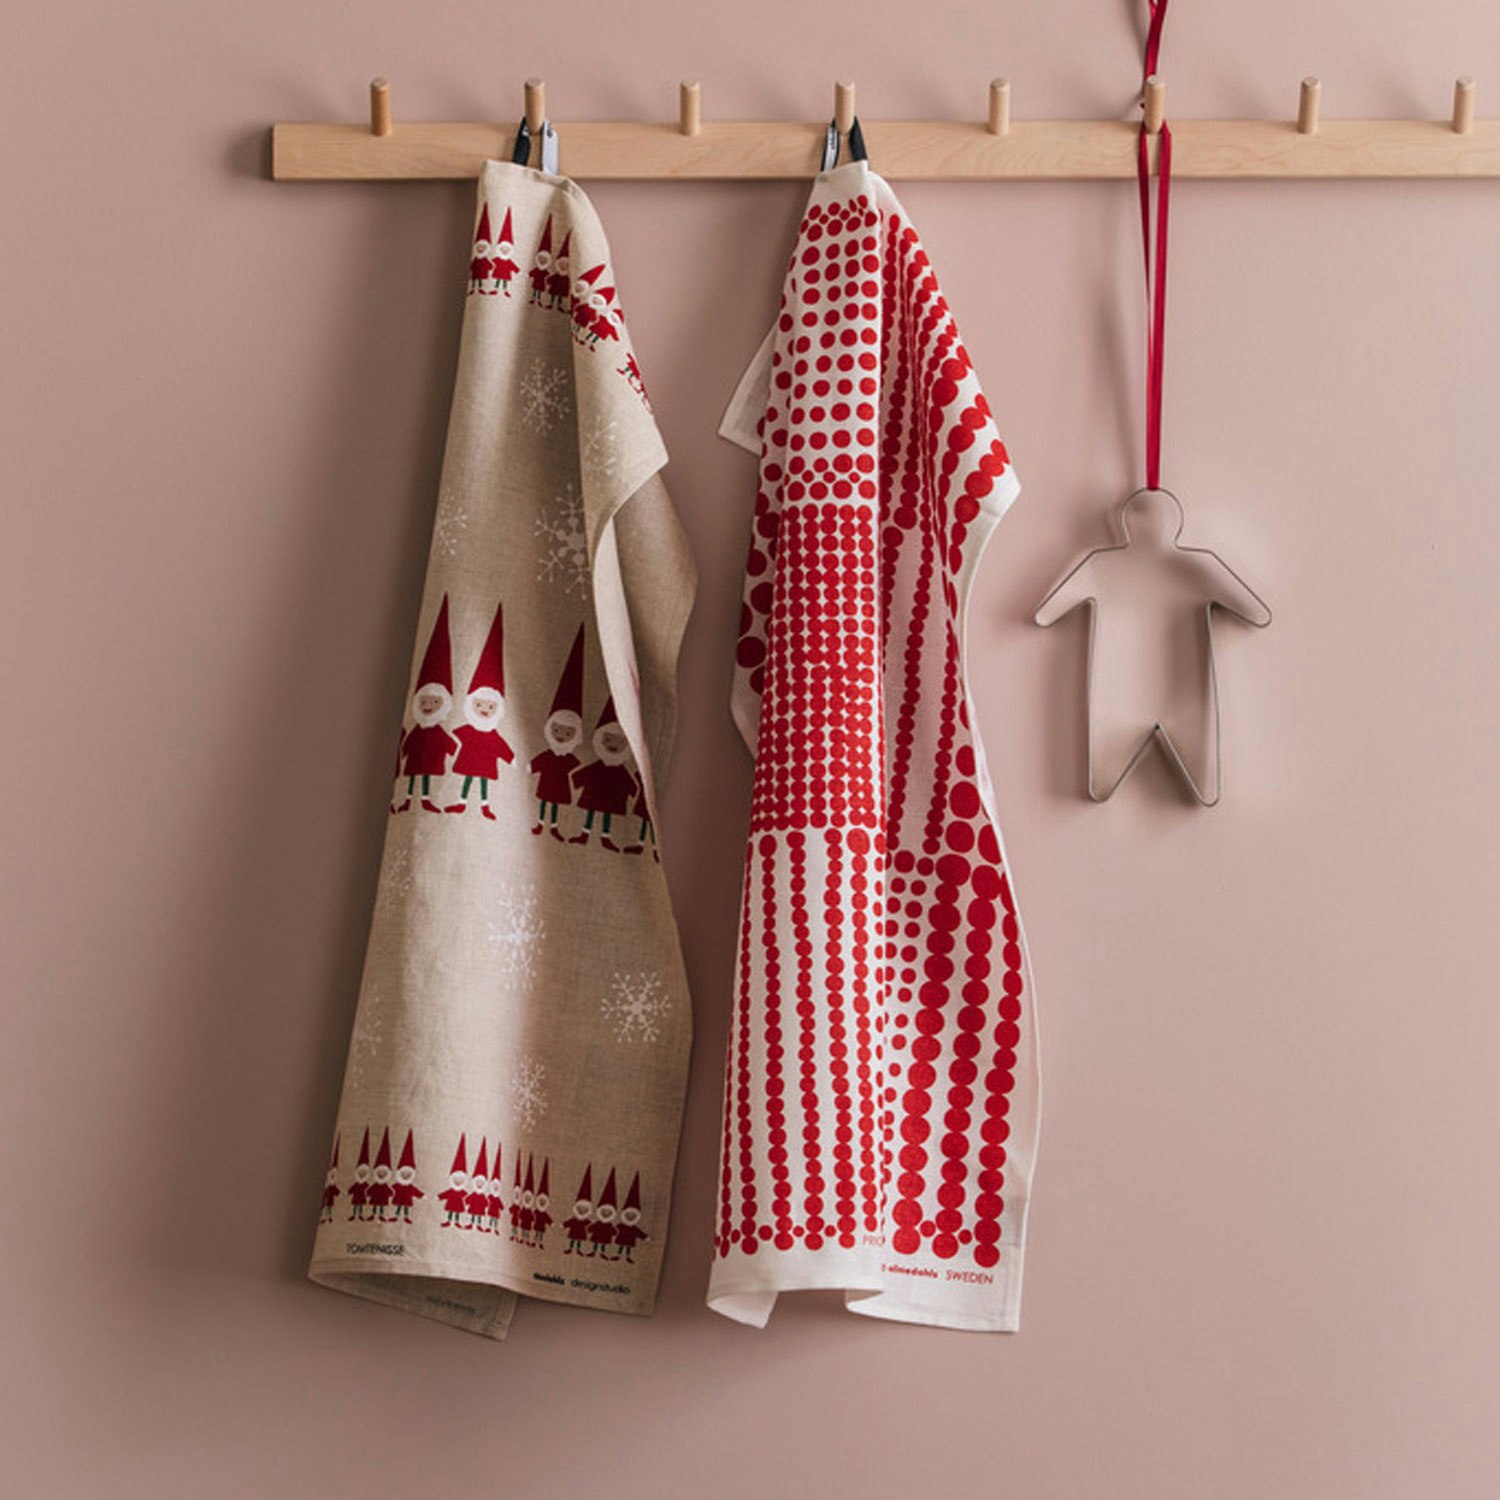 https://royaldesign.com/image/2/almedahls-kitchen-towel-red-1